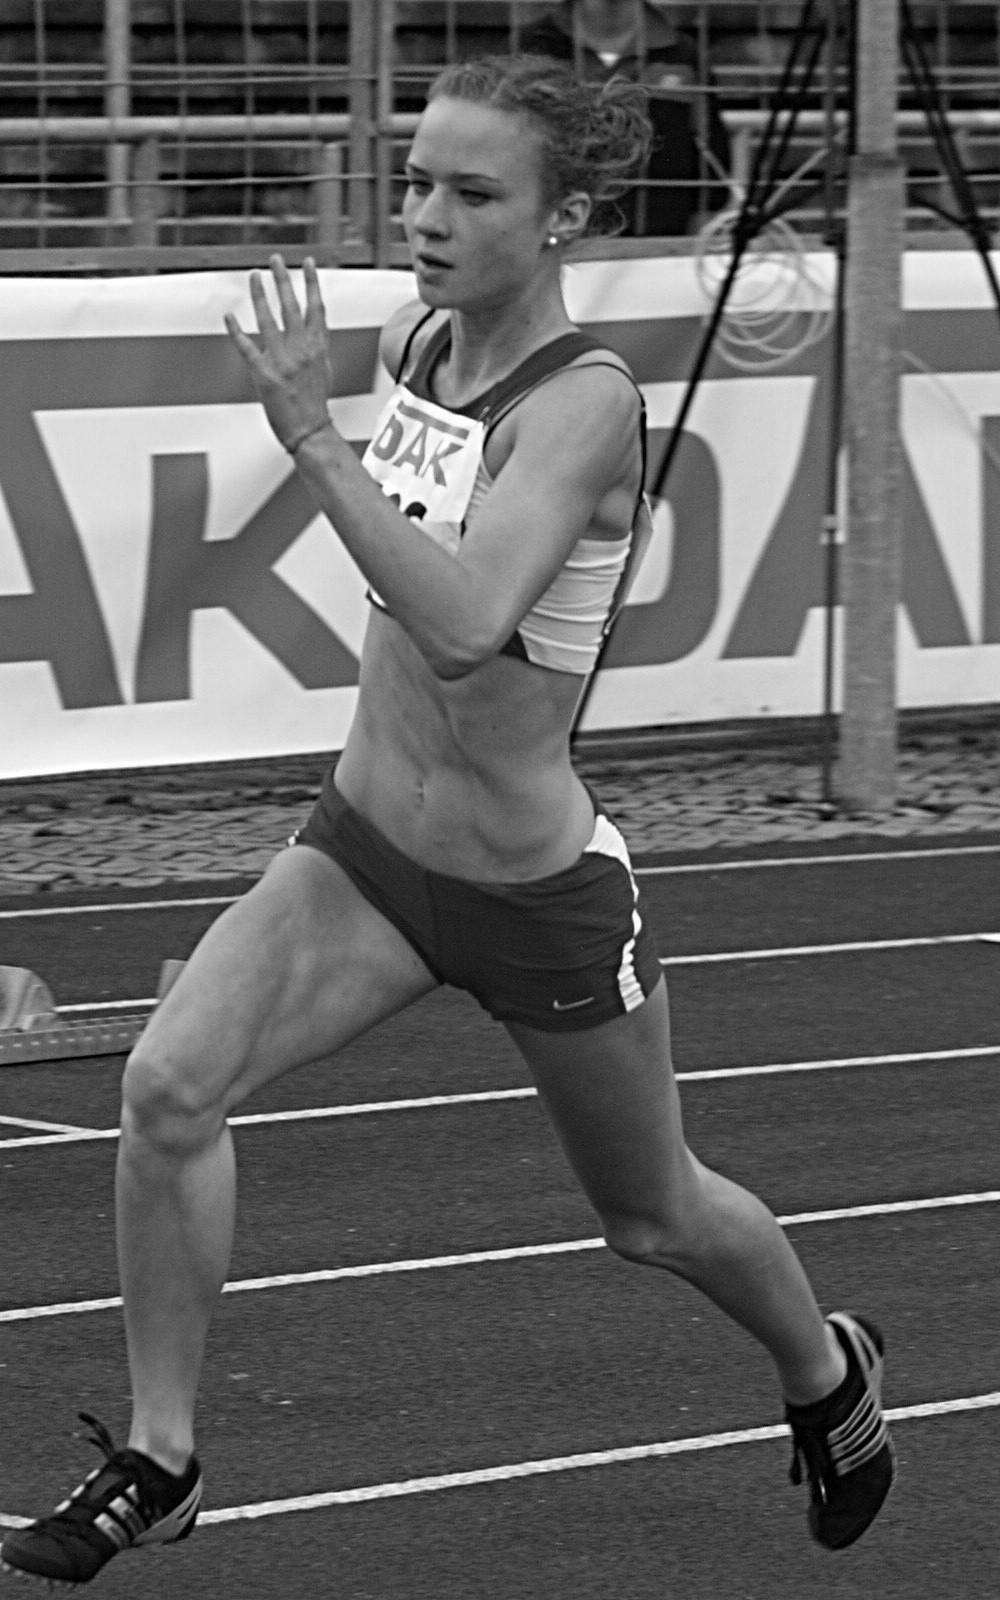 4 Lena Menzel - TSG Siebte der U20-Weltmeisterschaften mit der 4x400m-Staffel Eine sportliche Berg- und Talfahrt endete für Lena Menzel im Jahr 2010 mit ihrem bisher größten Erfolg: Platz sieben mit